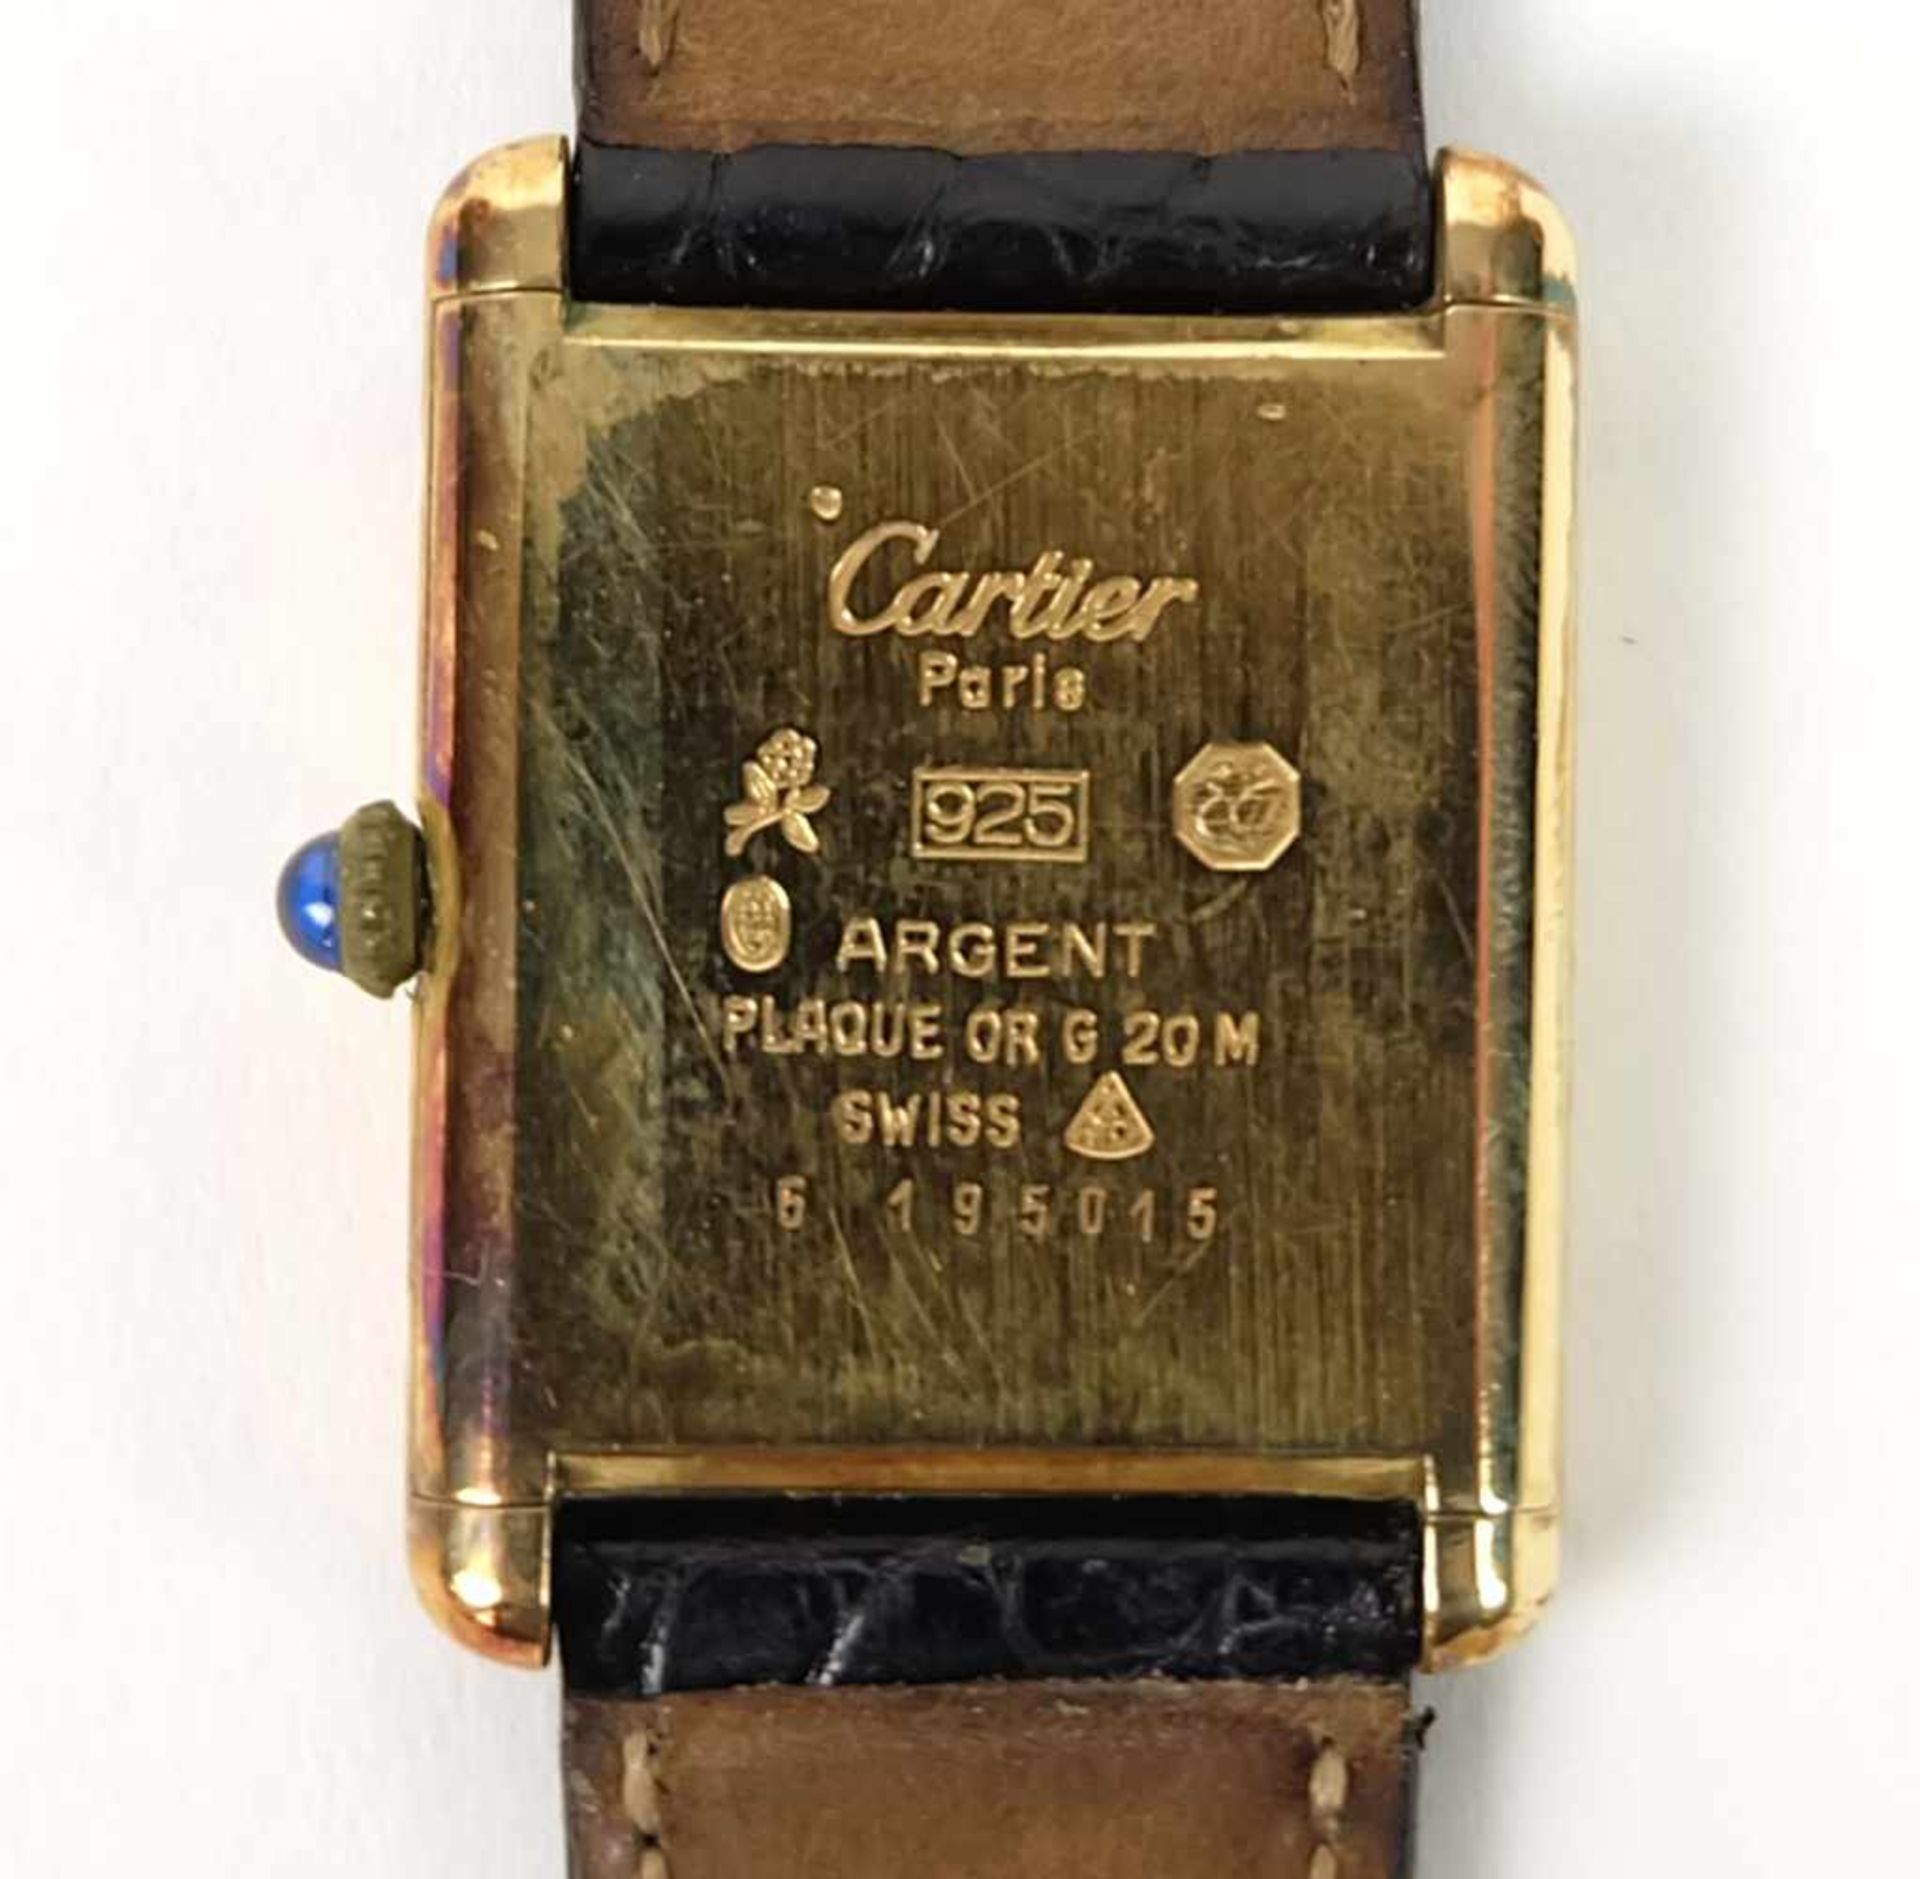 DAU, Hersteller Must de Cartier/ Paris, 925er-Silber vergoldet, entspr. Beschau, Saphircabochon, - Bild 4 aus 4